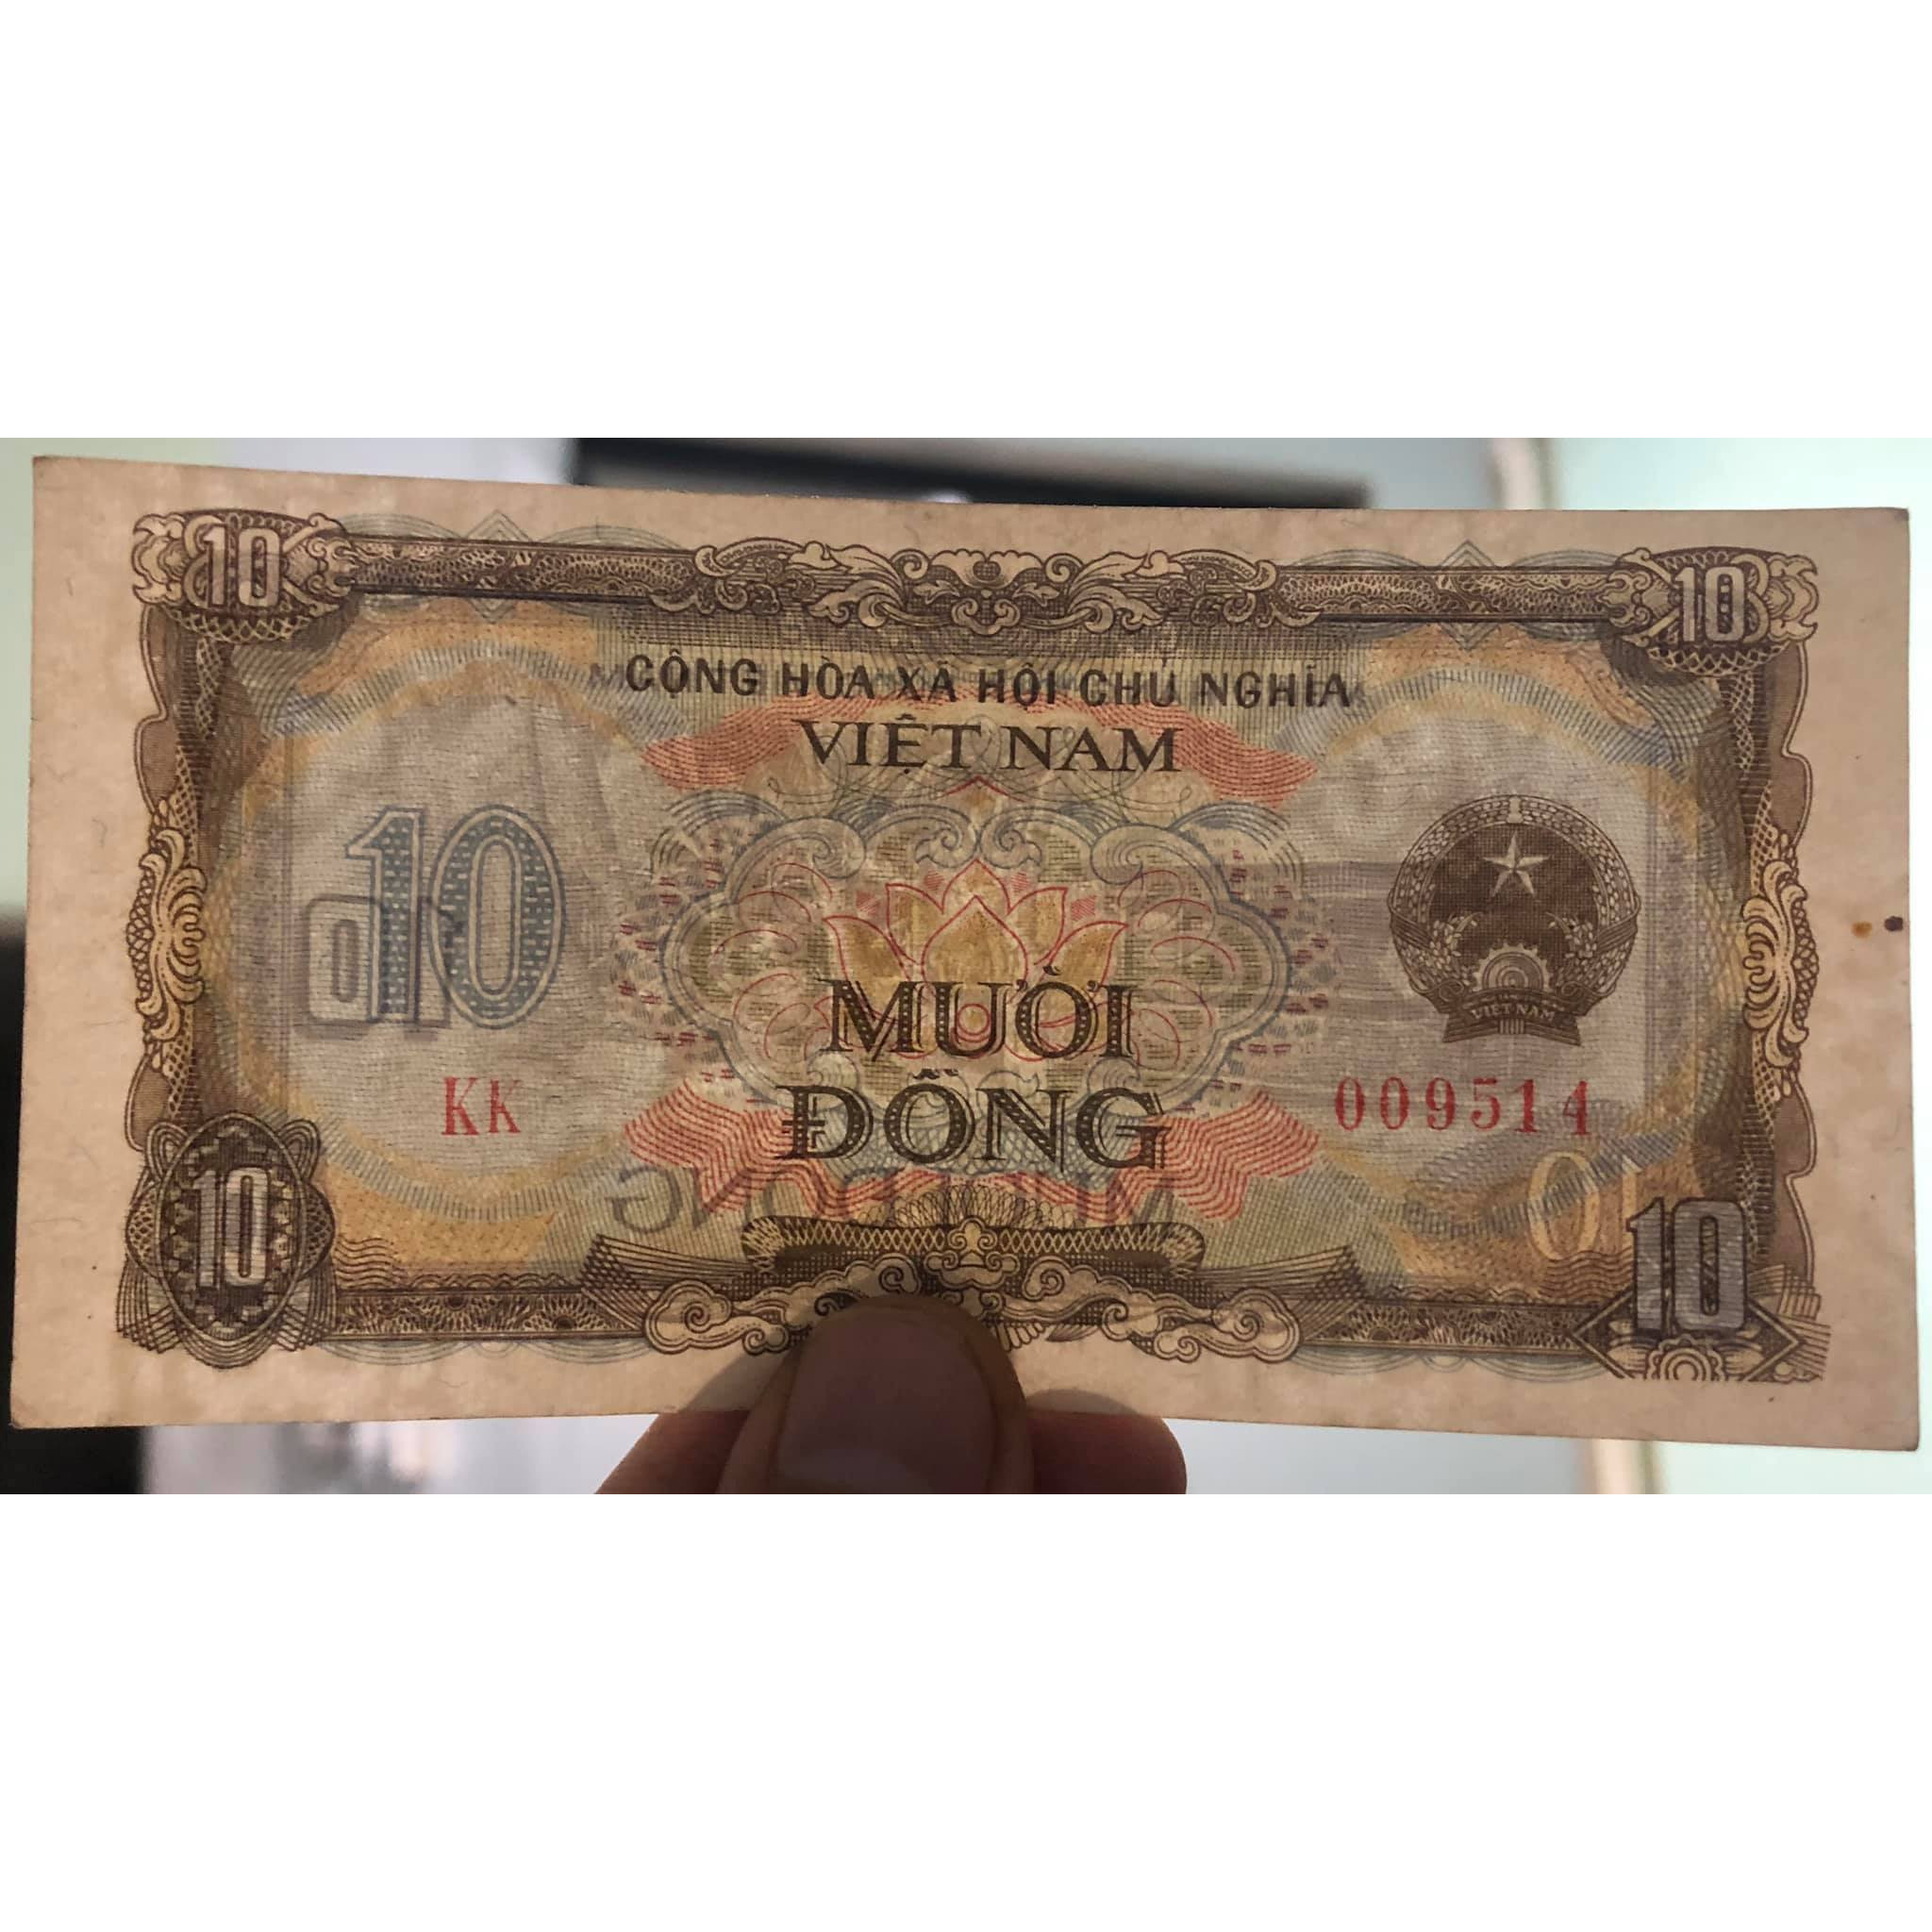 Tiền cổ Việt Nam, 10 đồng bao cấp 1980 sưu tầm